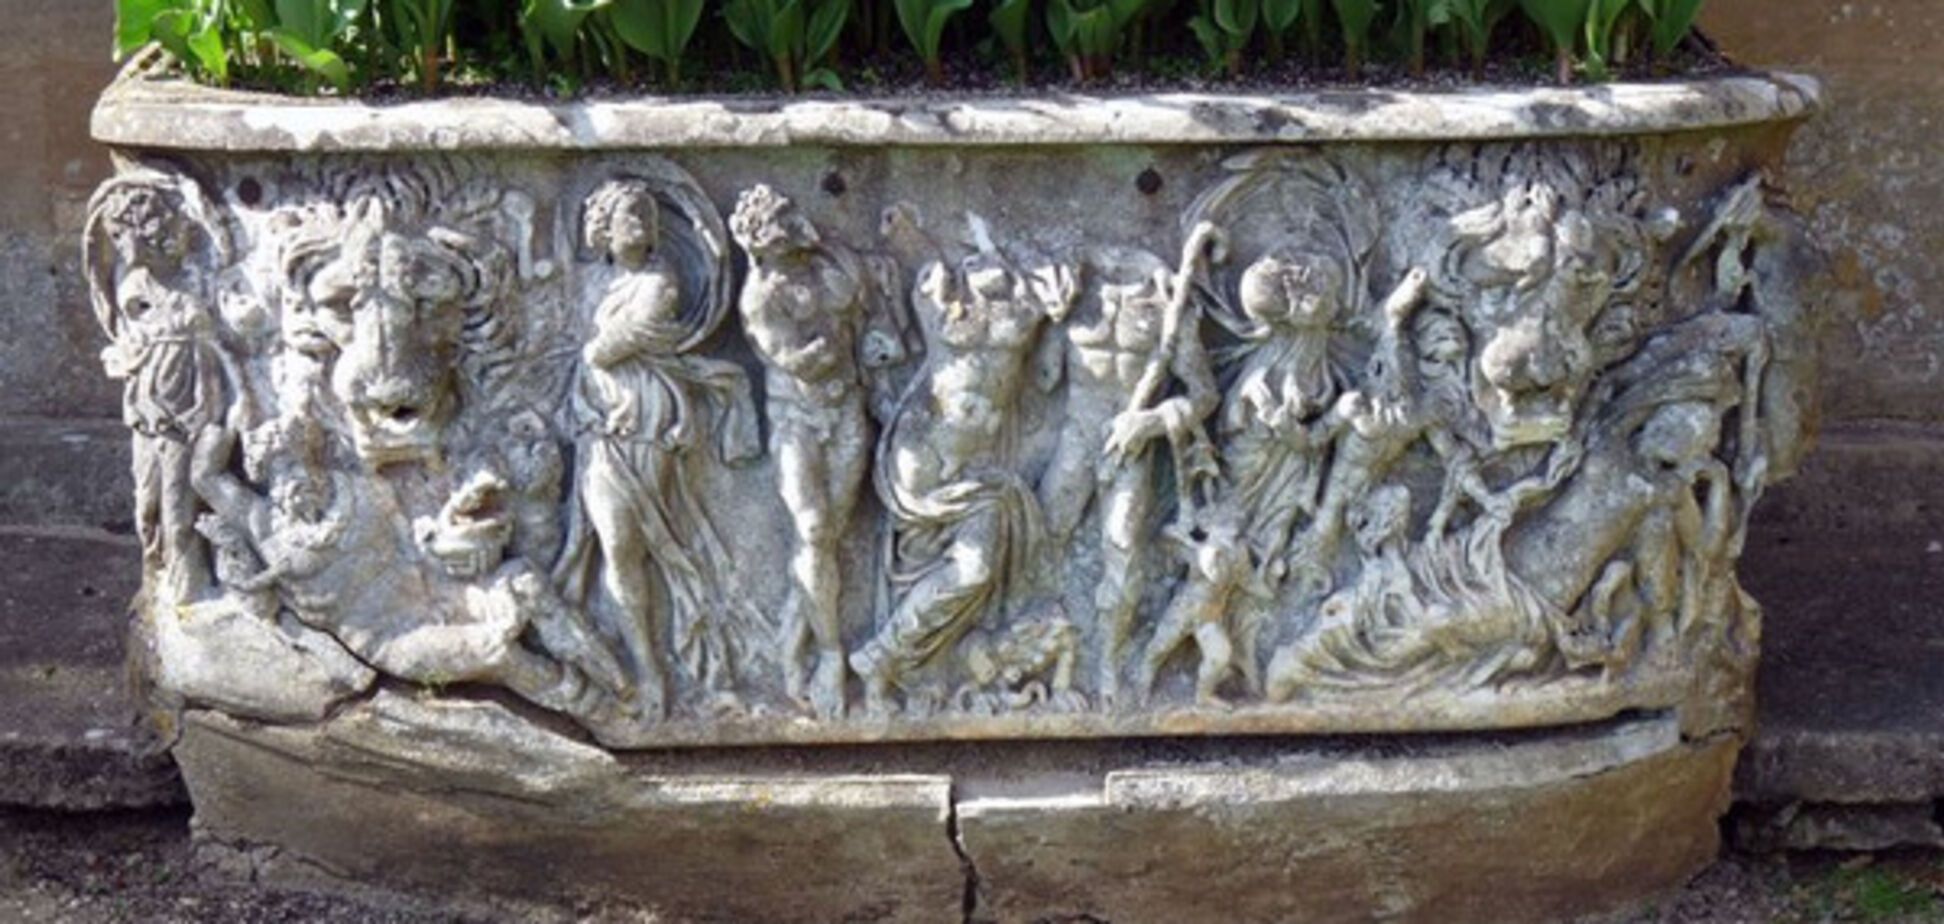 древнеримский саркофаг, который использовали в качестве цветочника